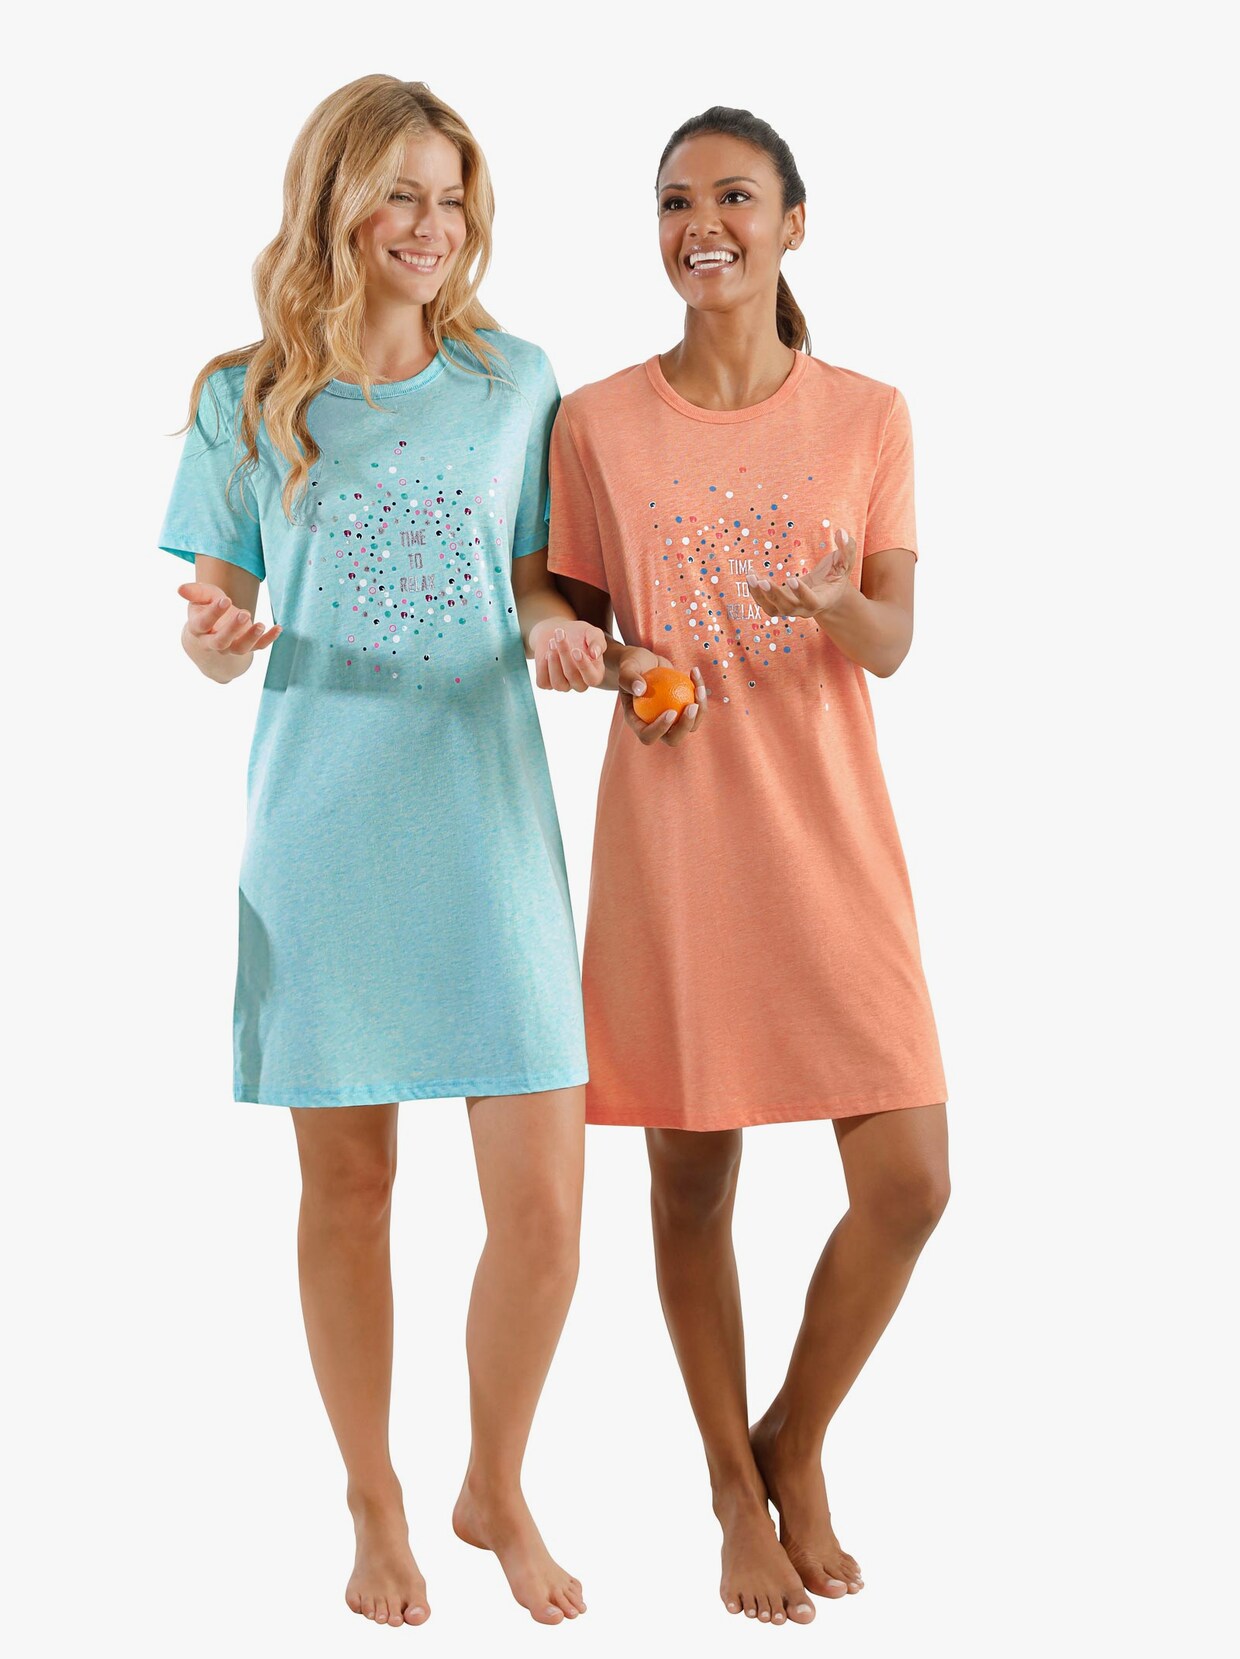 wäschepur Sleepshirts - mint-meliert + orange-meliert